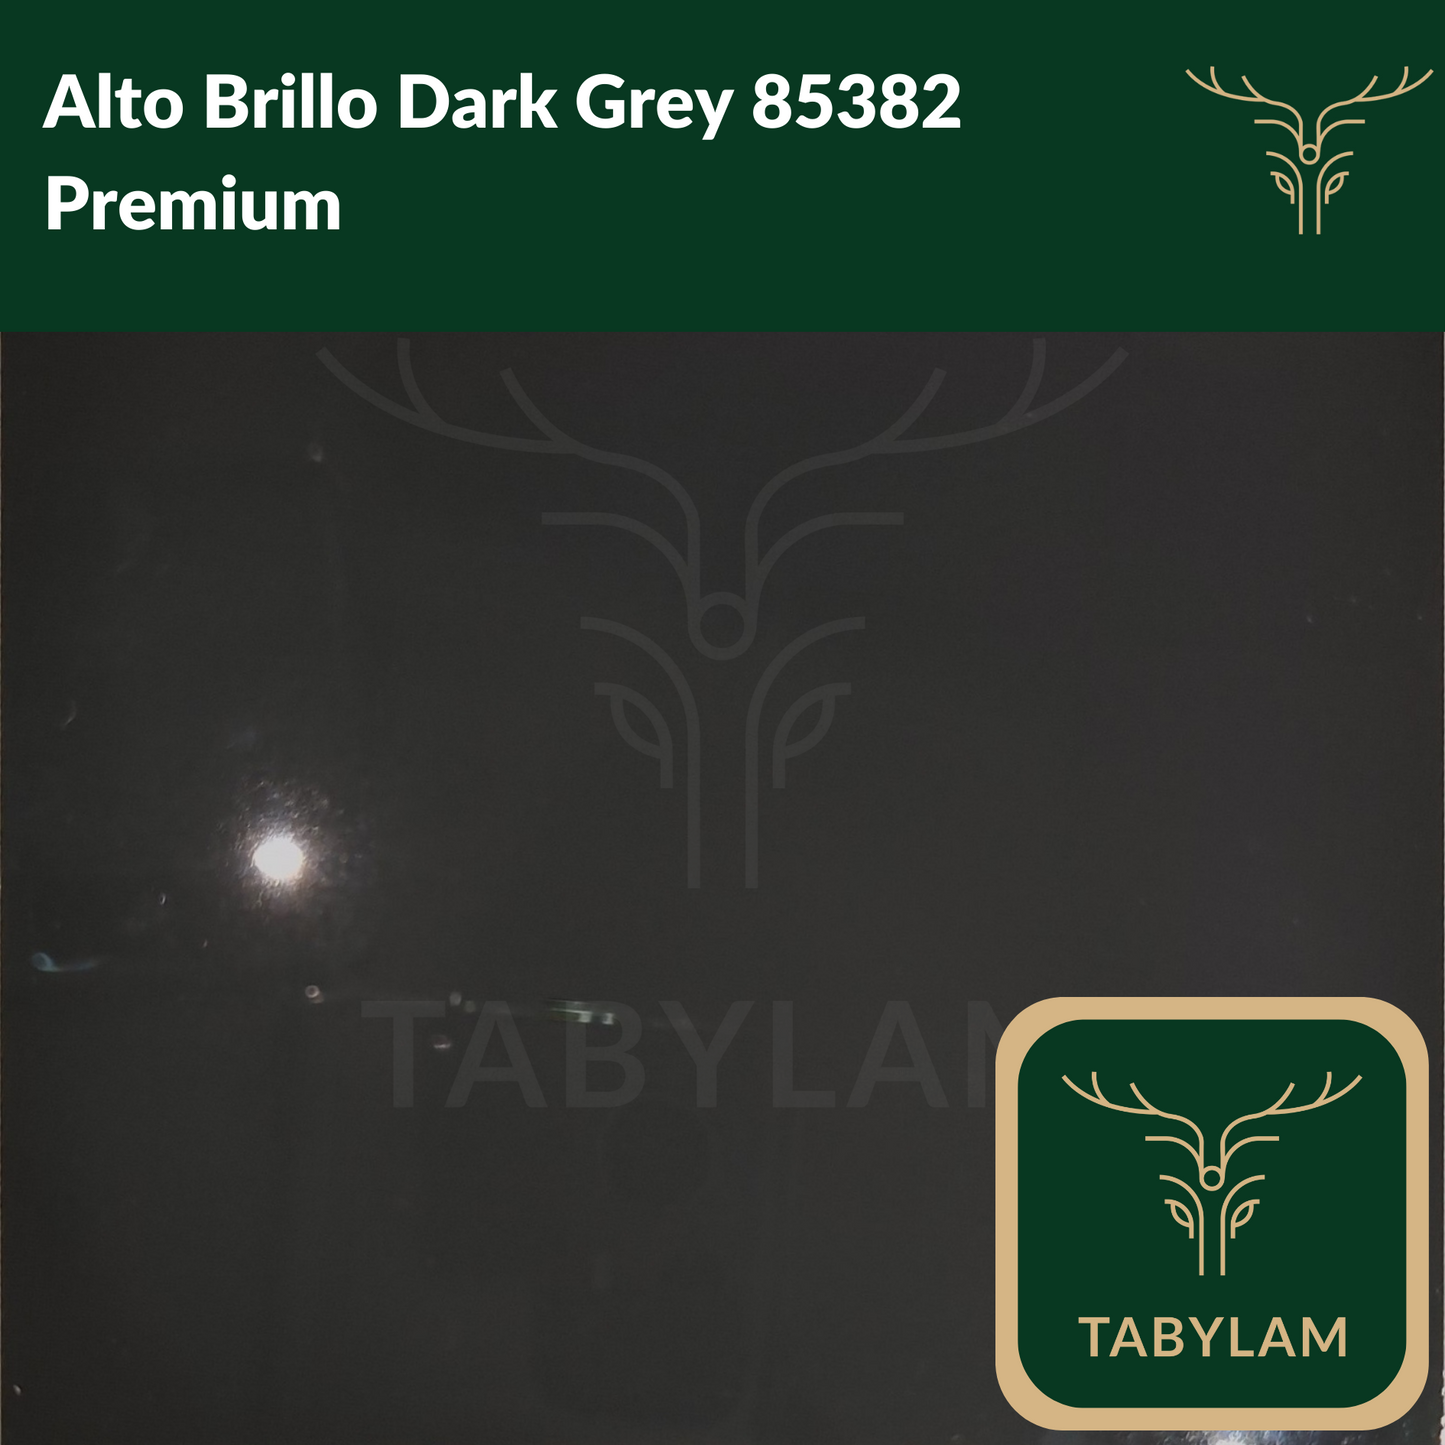 Tablero Diseños Sólidos Alto Brillo Acrílico Premium 1800 - Tabylam